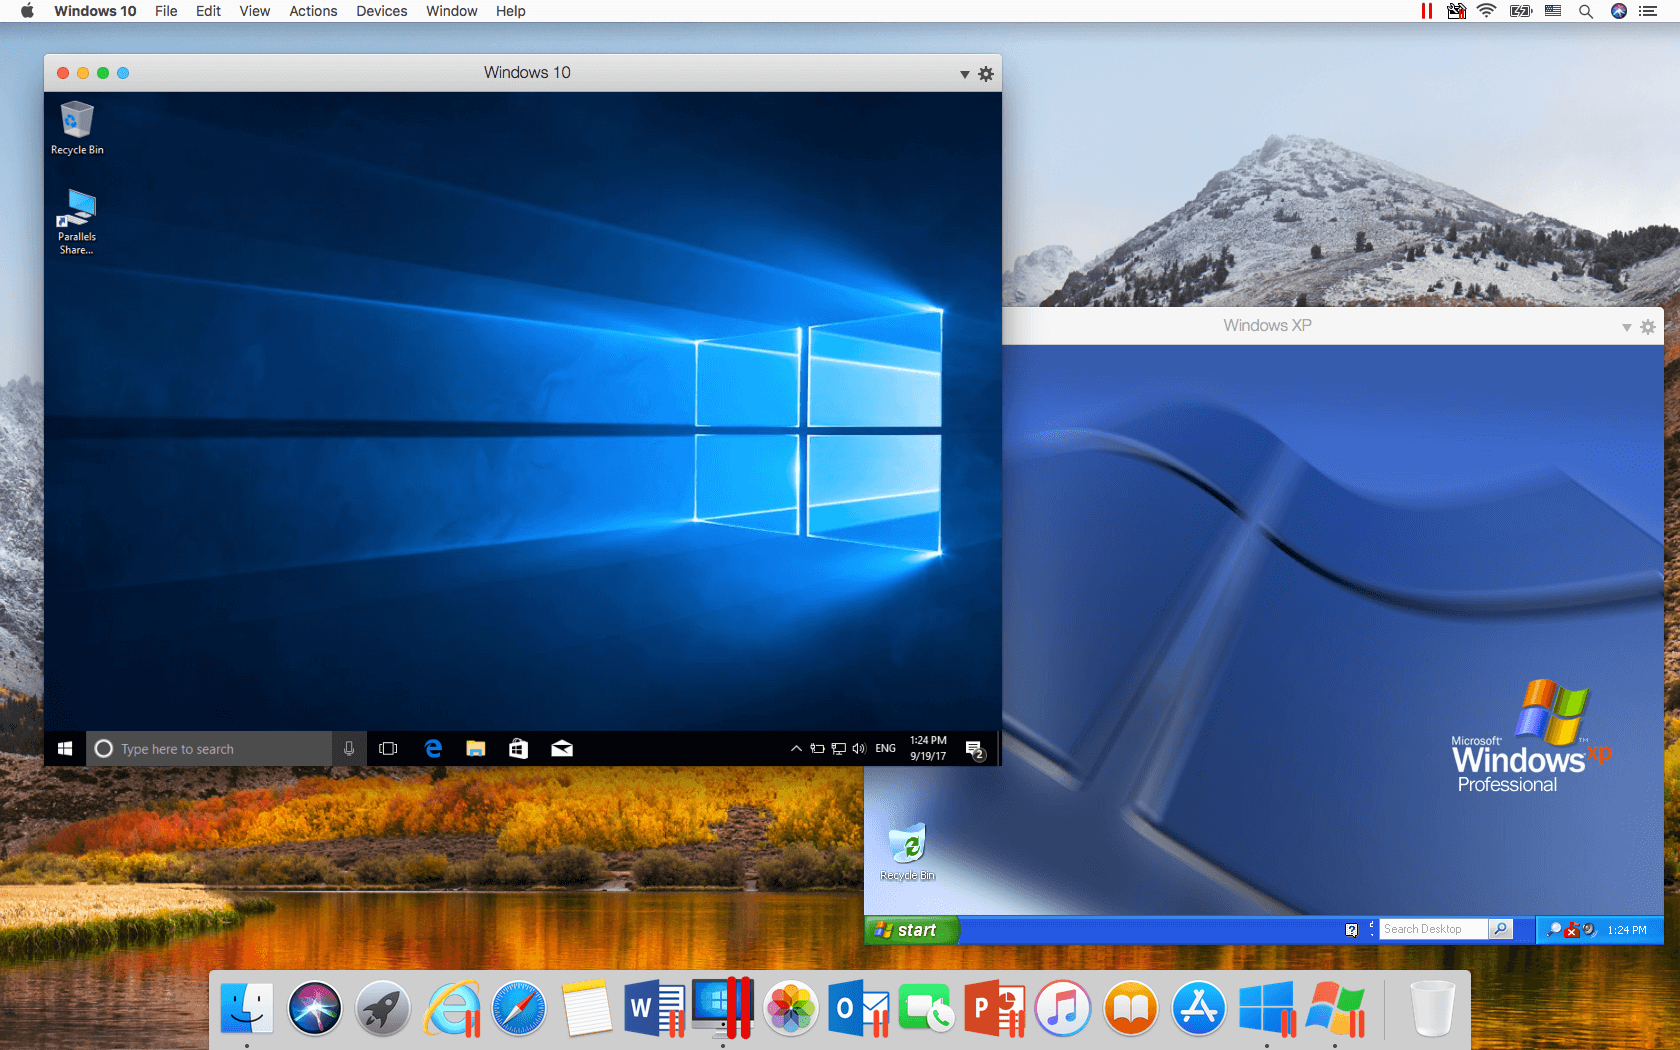 parallel desktop 13 for mac torrent